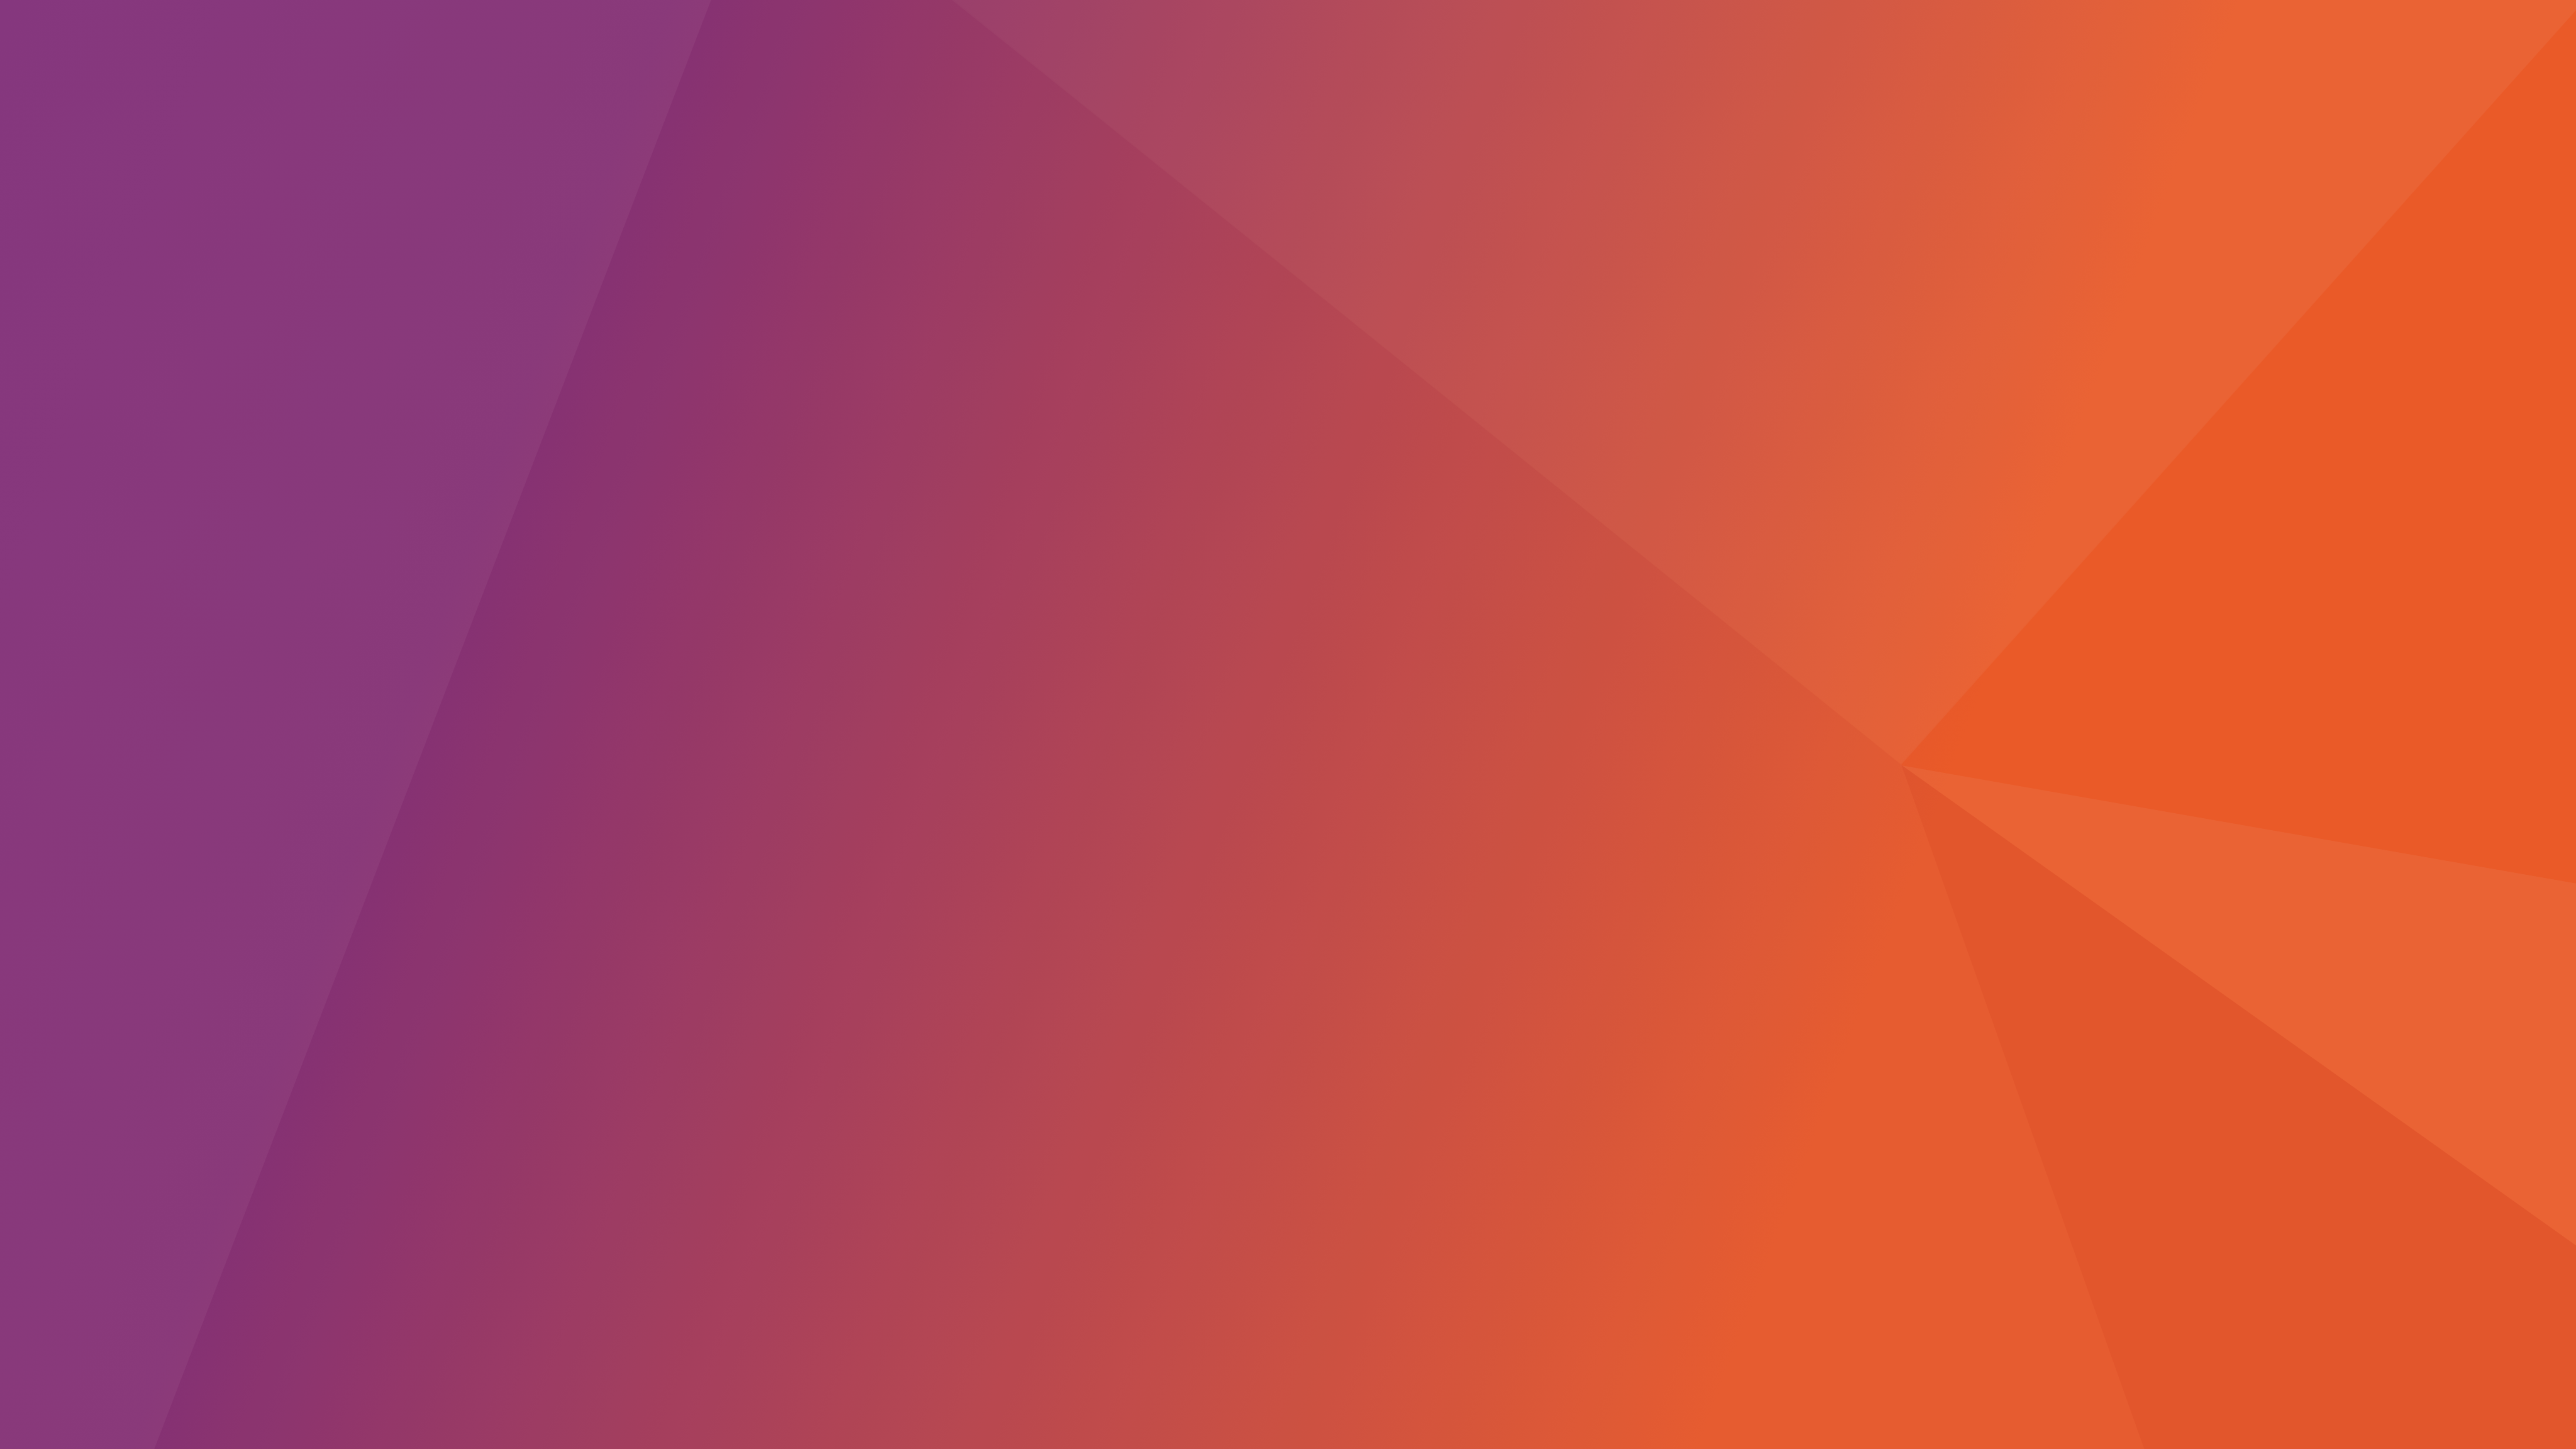 ubuntu fond d'écran télécharger,rouge,orange,rose,violet,jaune